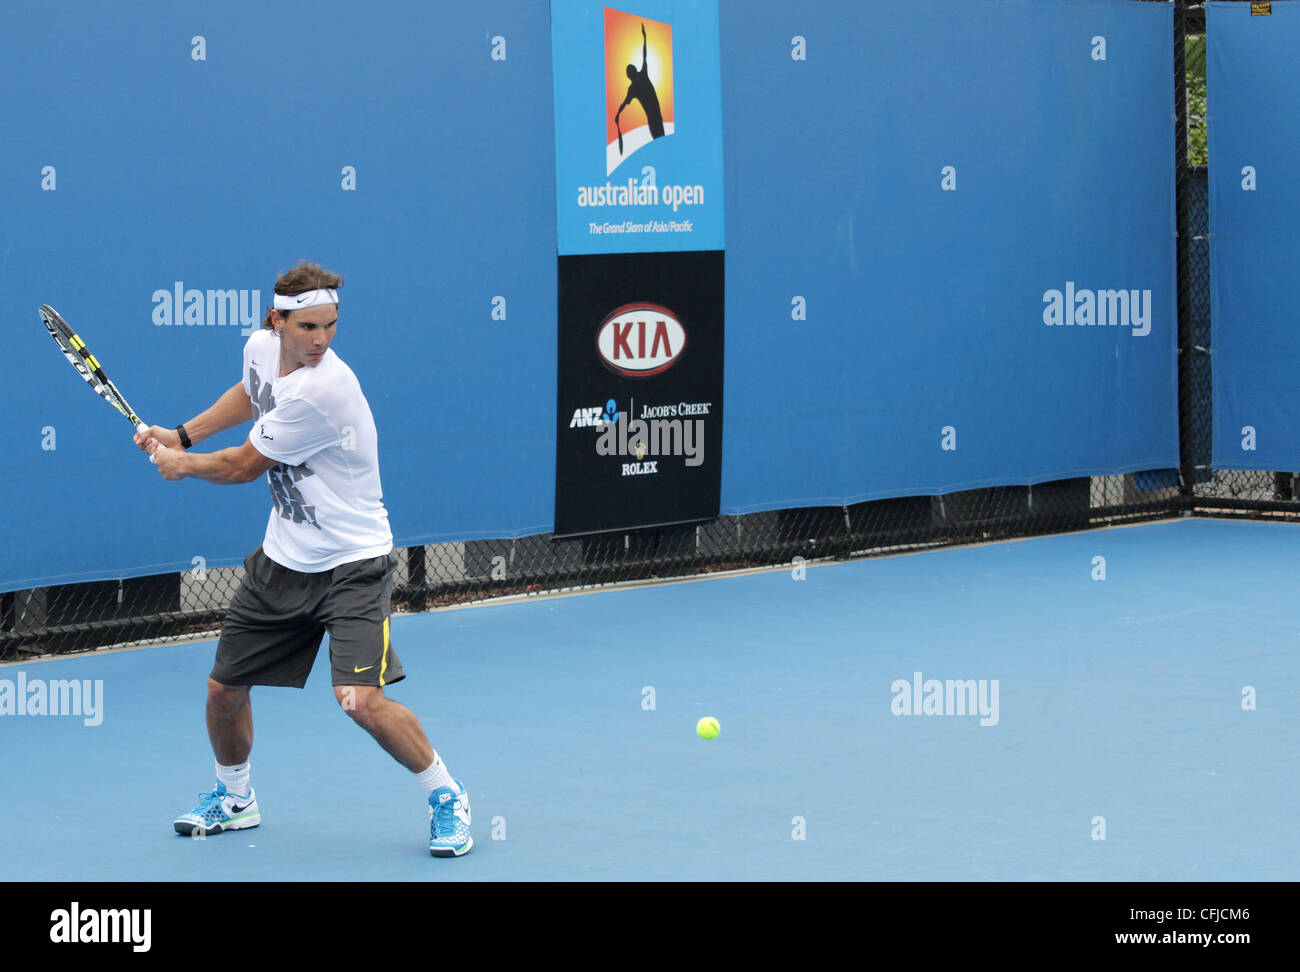 MELBOURNE, AUSTRALIE - janvier 21, 2012 : numéro 2 mondial ATP Rafael Nadal joueur de tennis hits sur une pratique cour Janvier 21, 2012 Banque D'Images